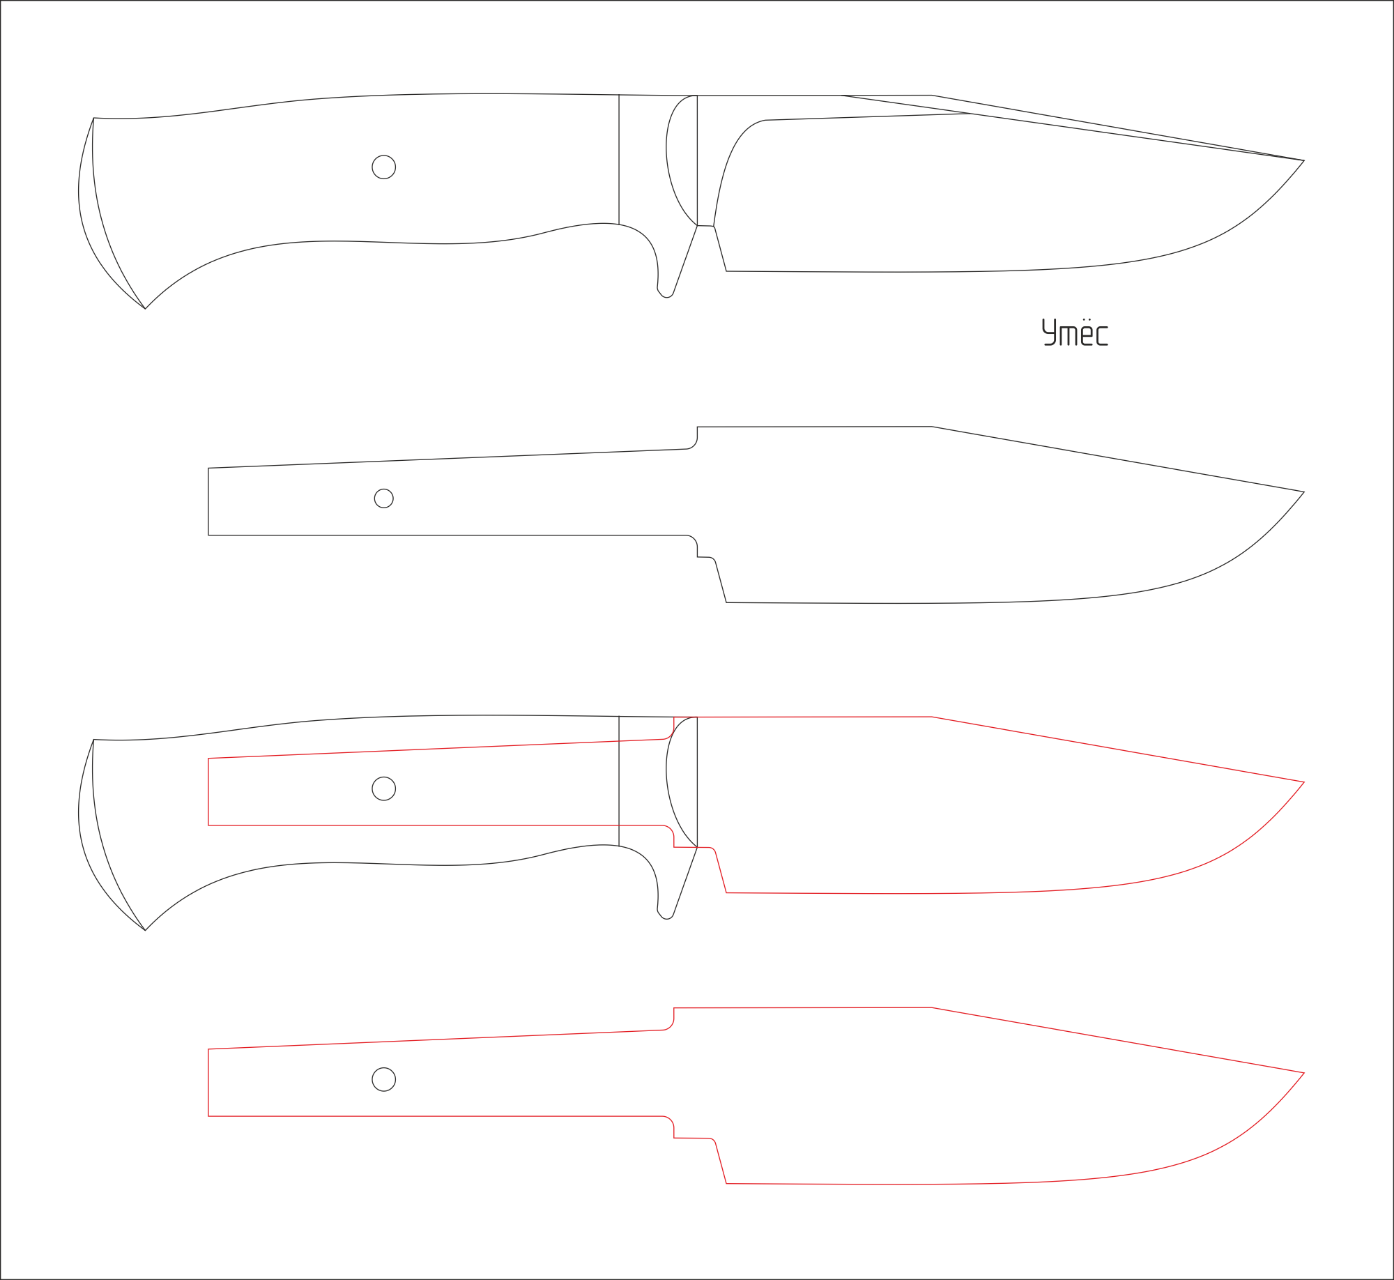 Рукоятки для ножей из дерева эскизы и чертежи фото